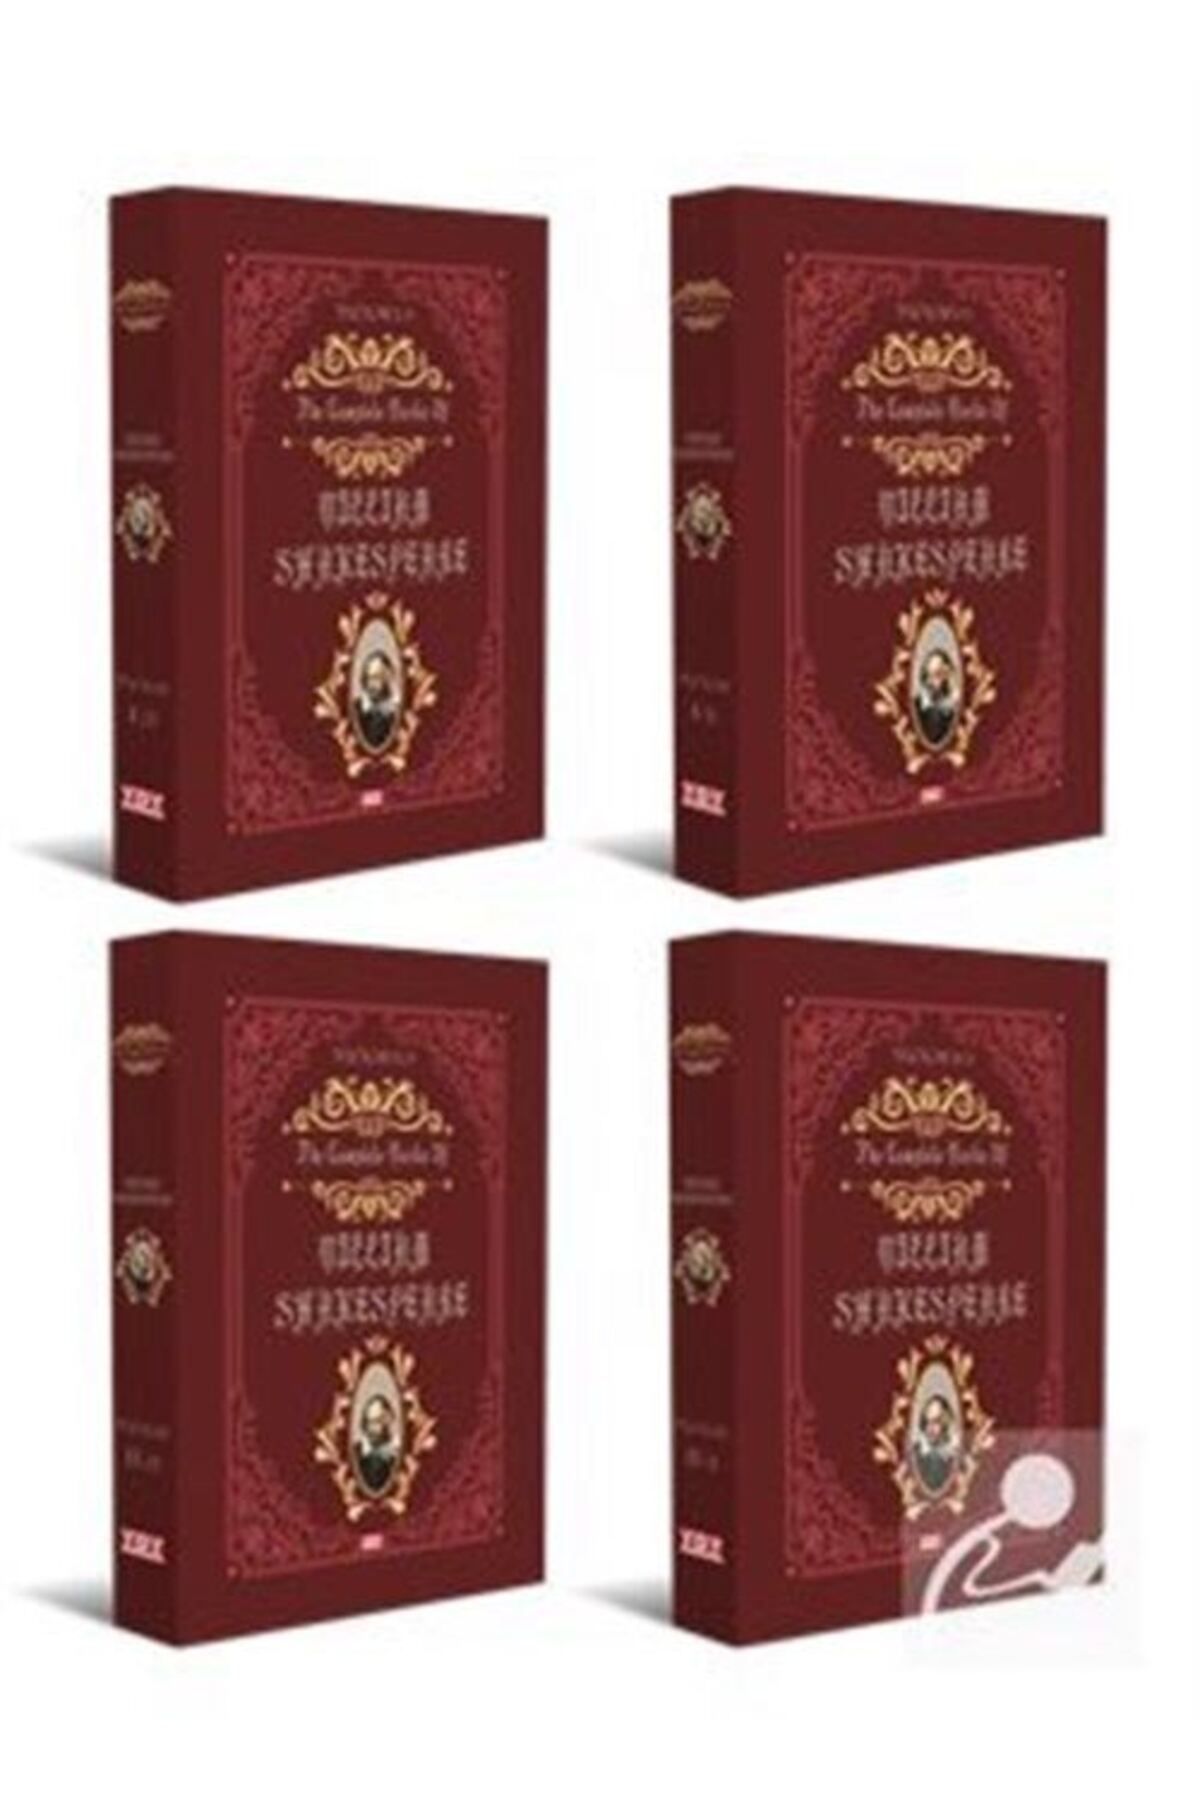 YDY Yayın Dünyamız Yayınları The Complete Works Of William Shakespeare (4 KİTAP)